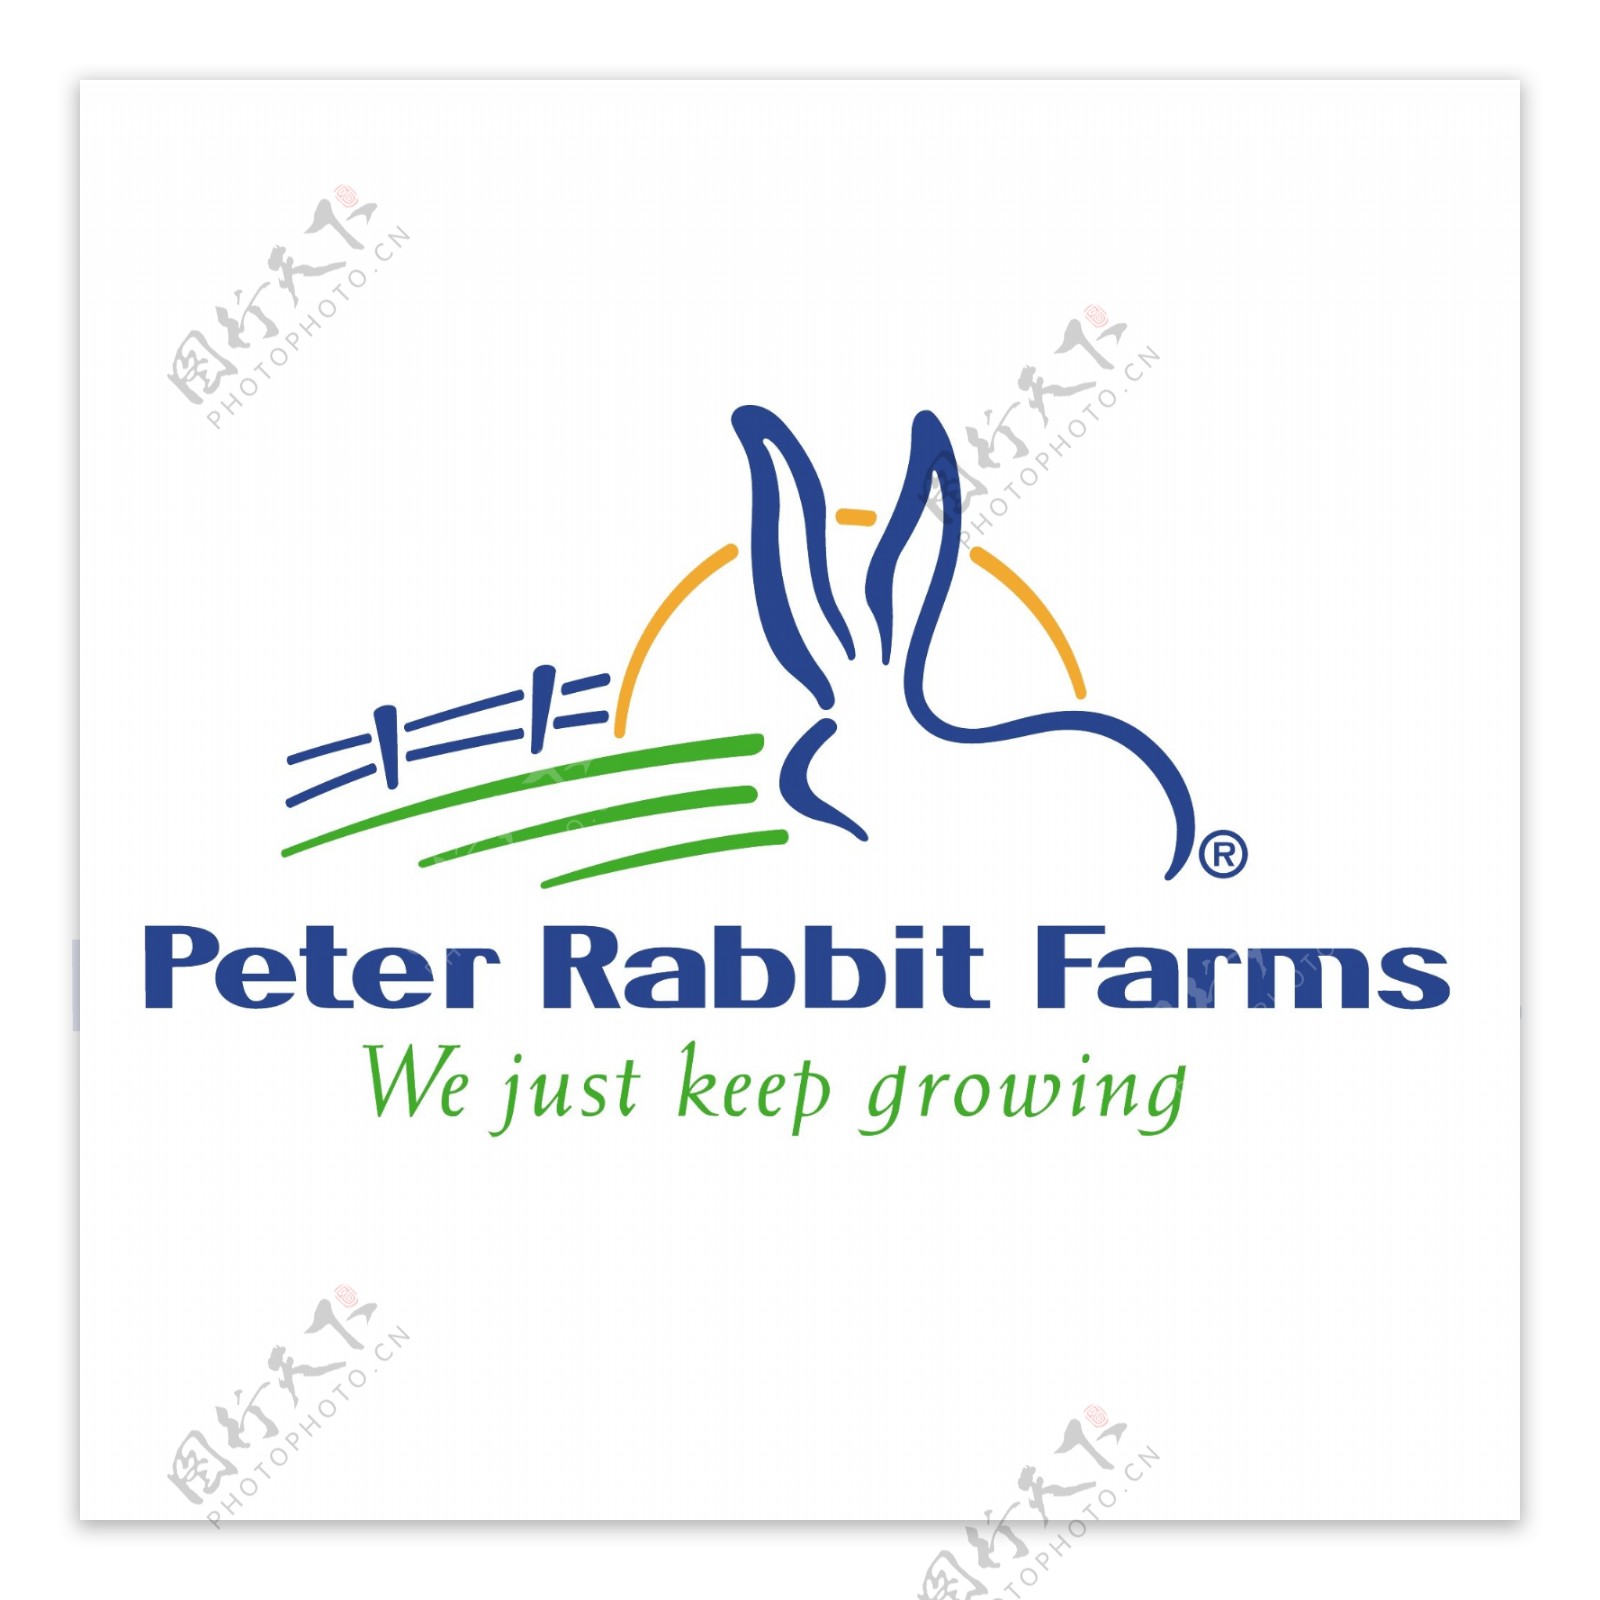 彼得兔子养殖